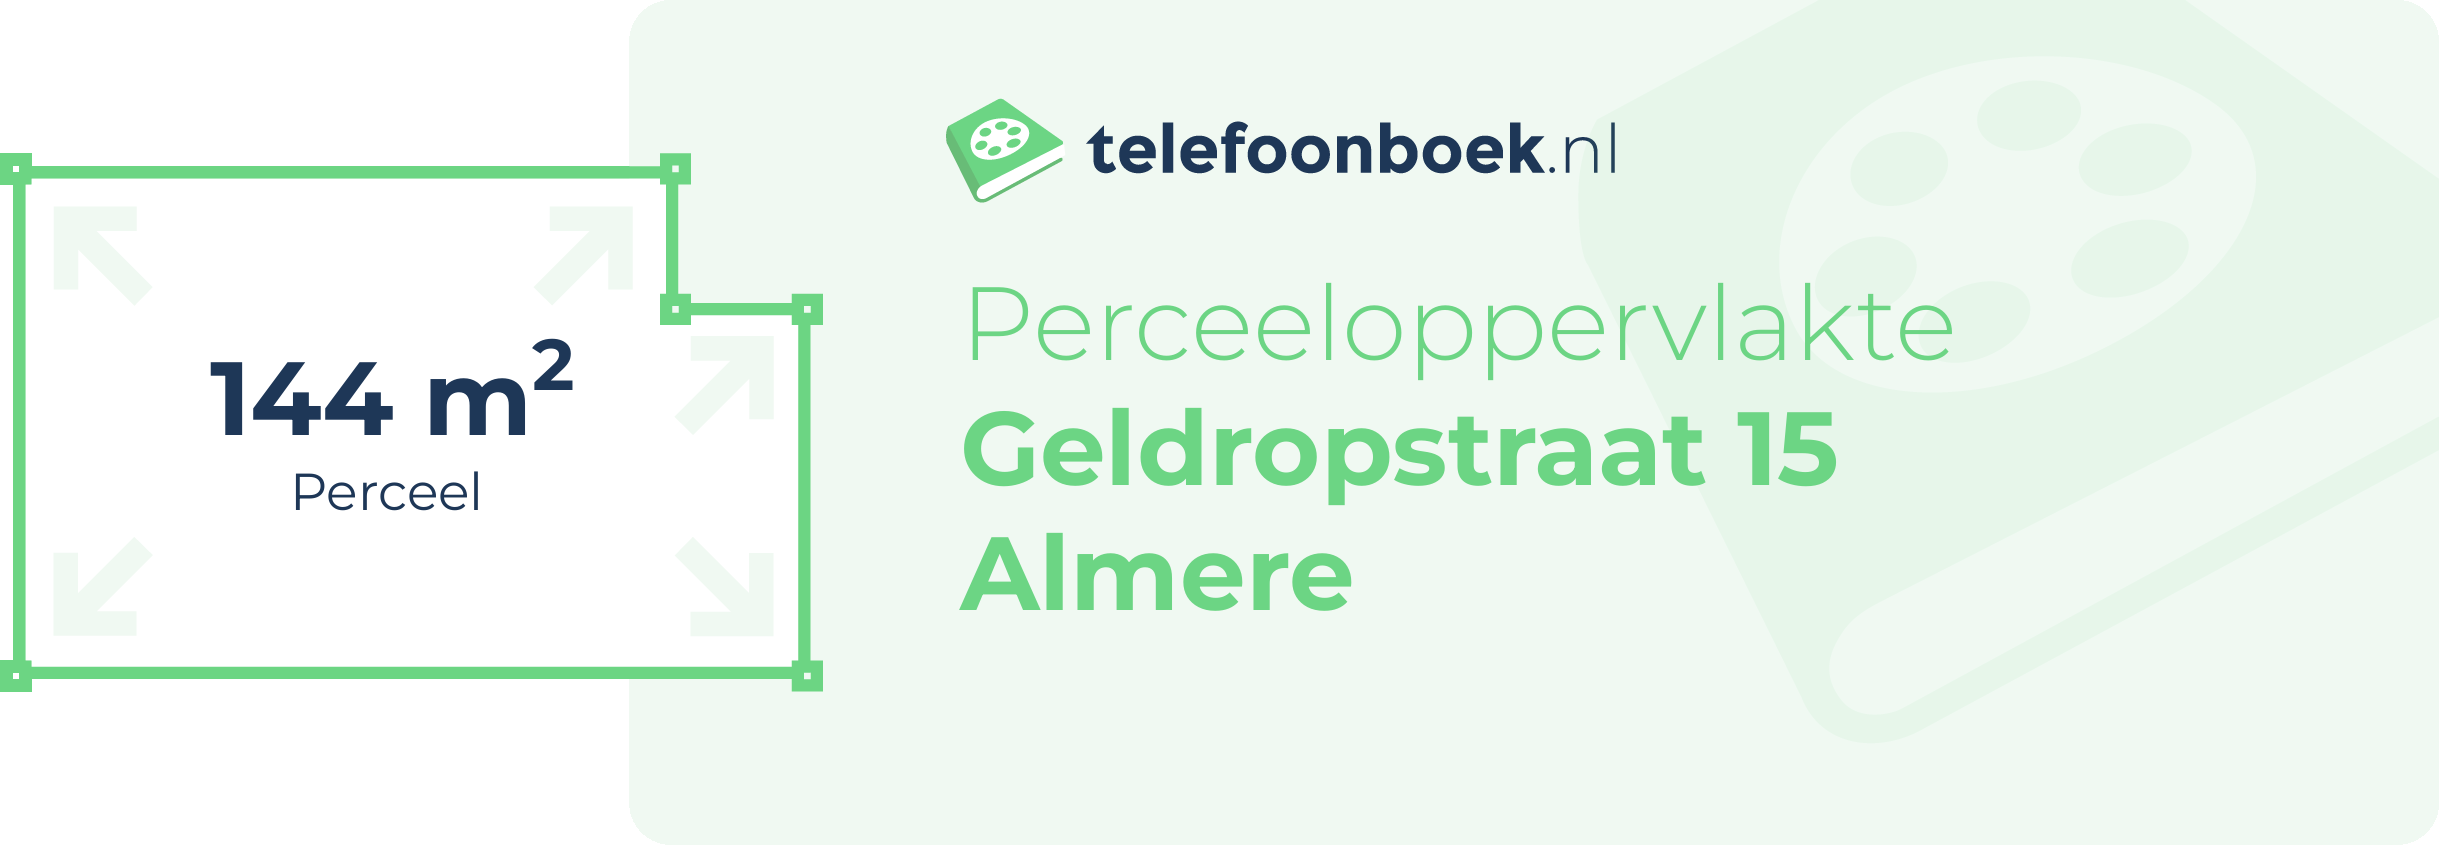 Perceeloppervlakte Geldropstraat 15 Almere